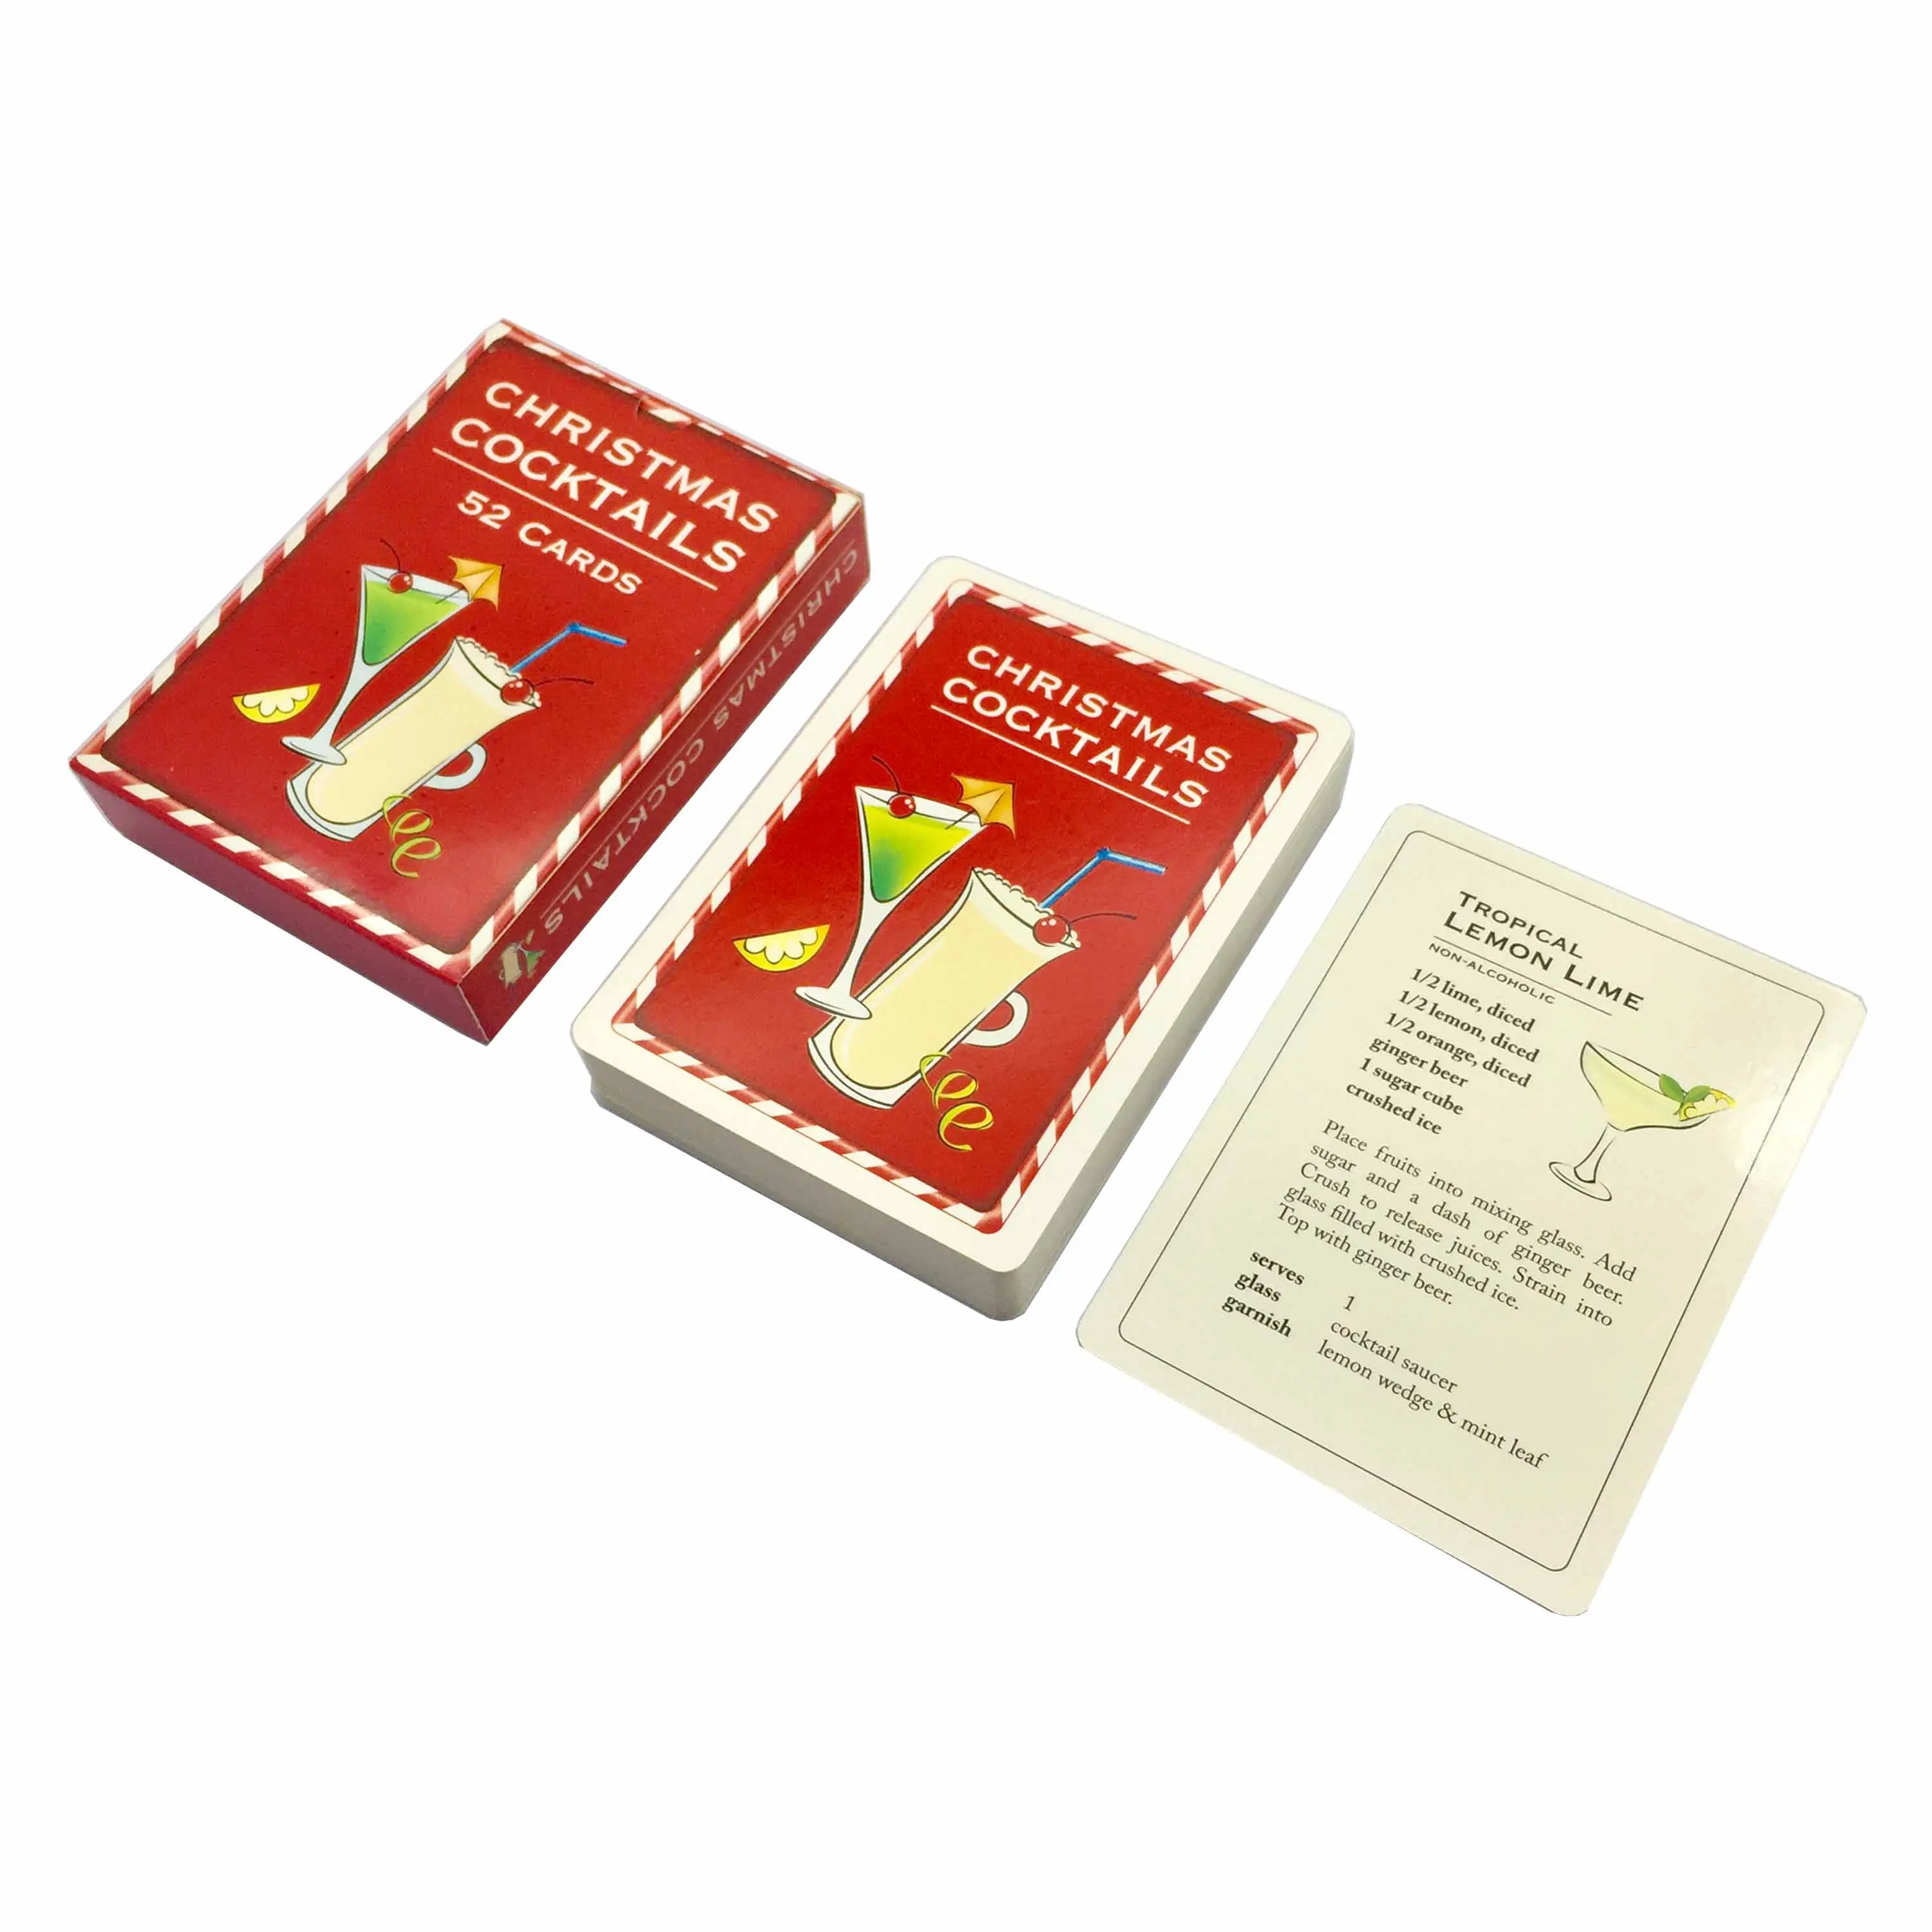 Custom recycling biologisch abbaubar weihnachten cocktails vintage spielkarten